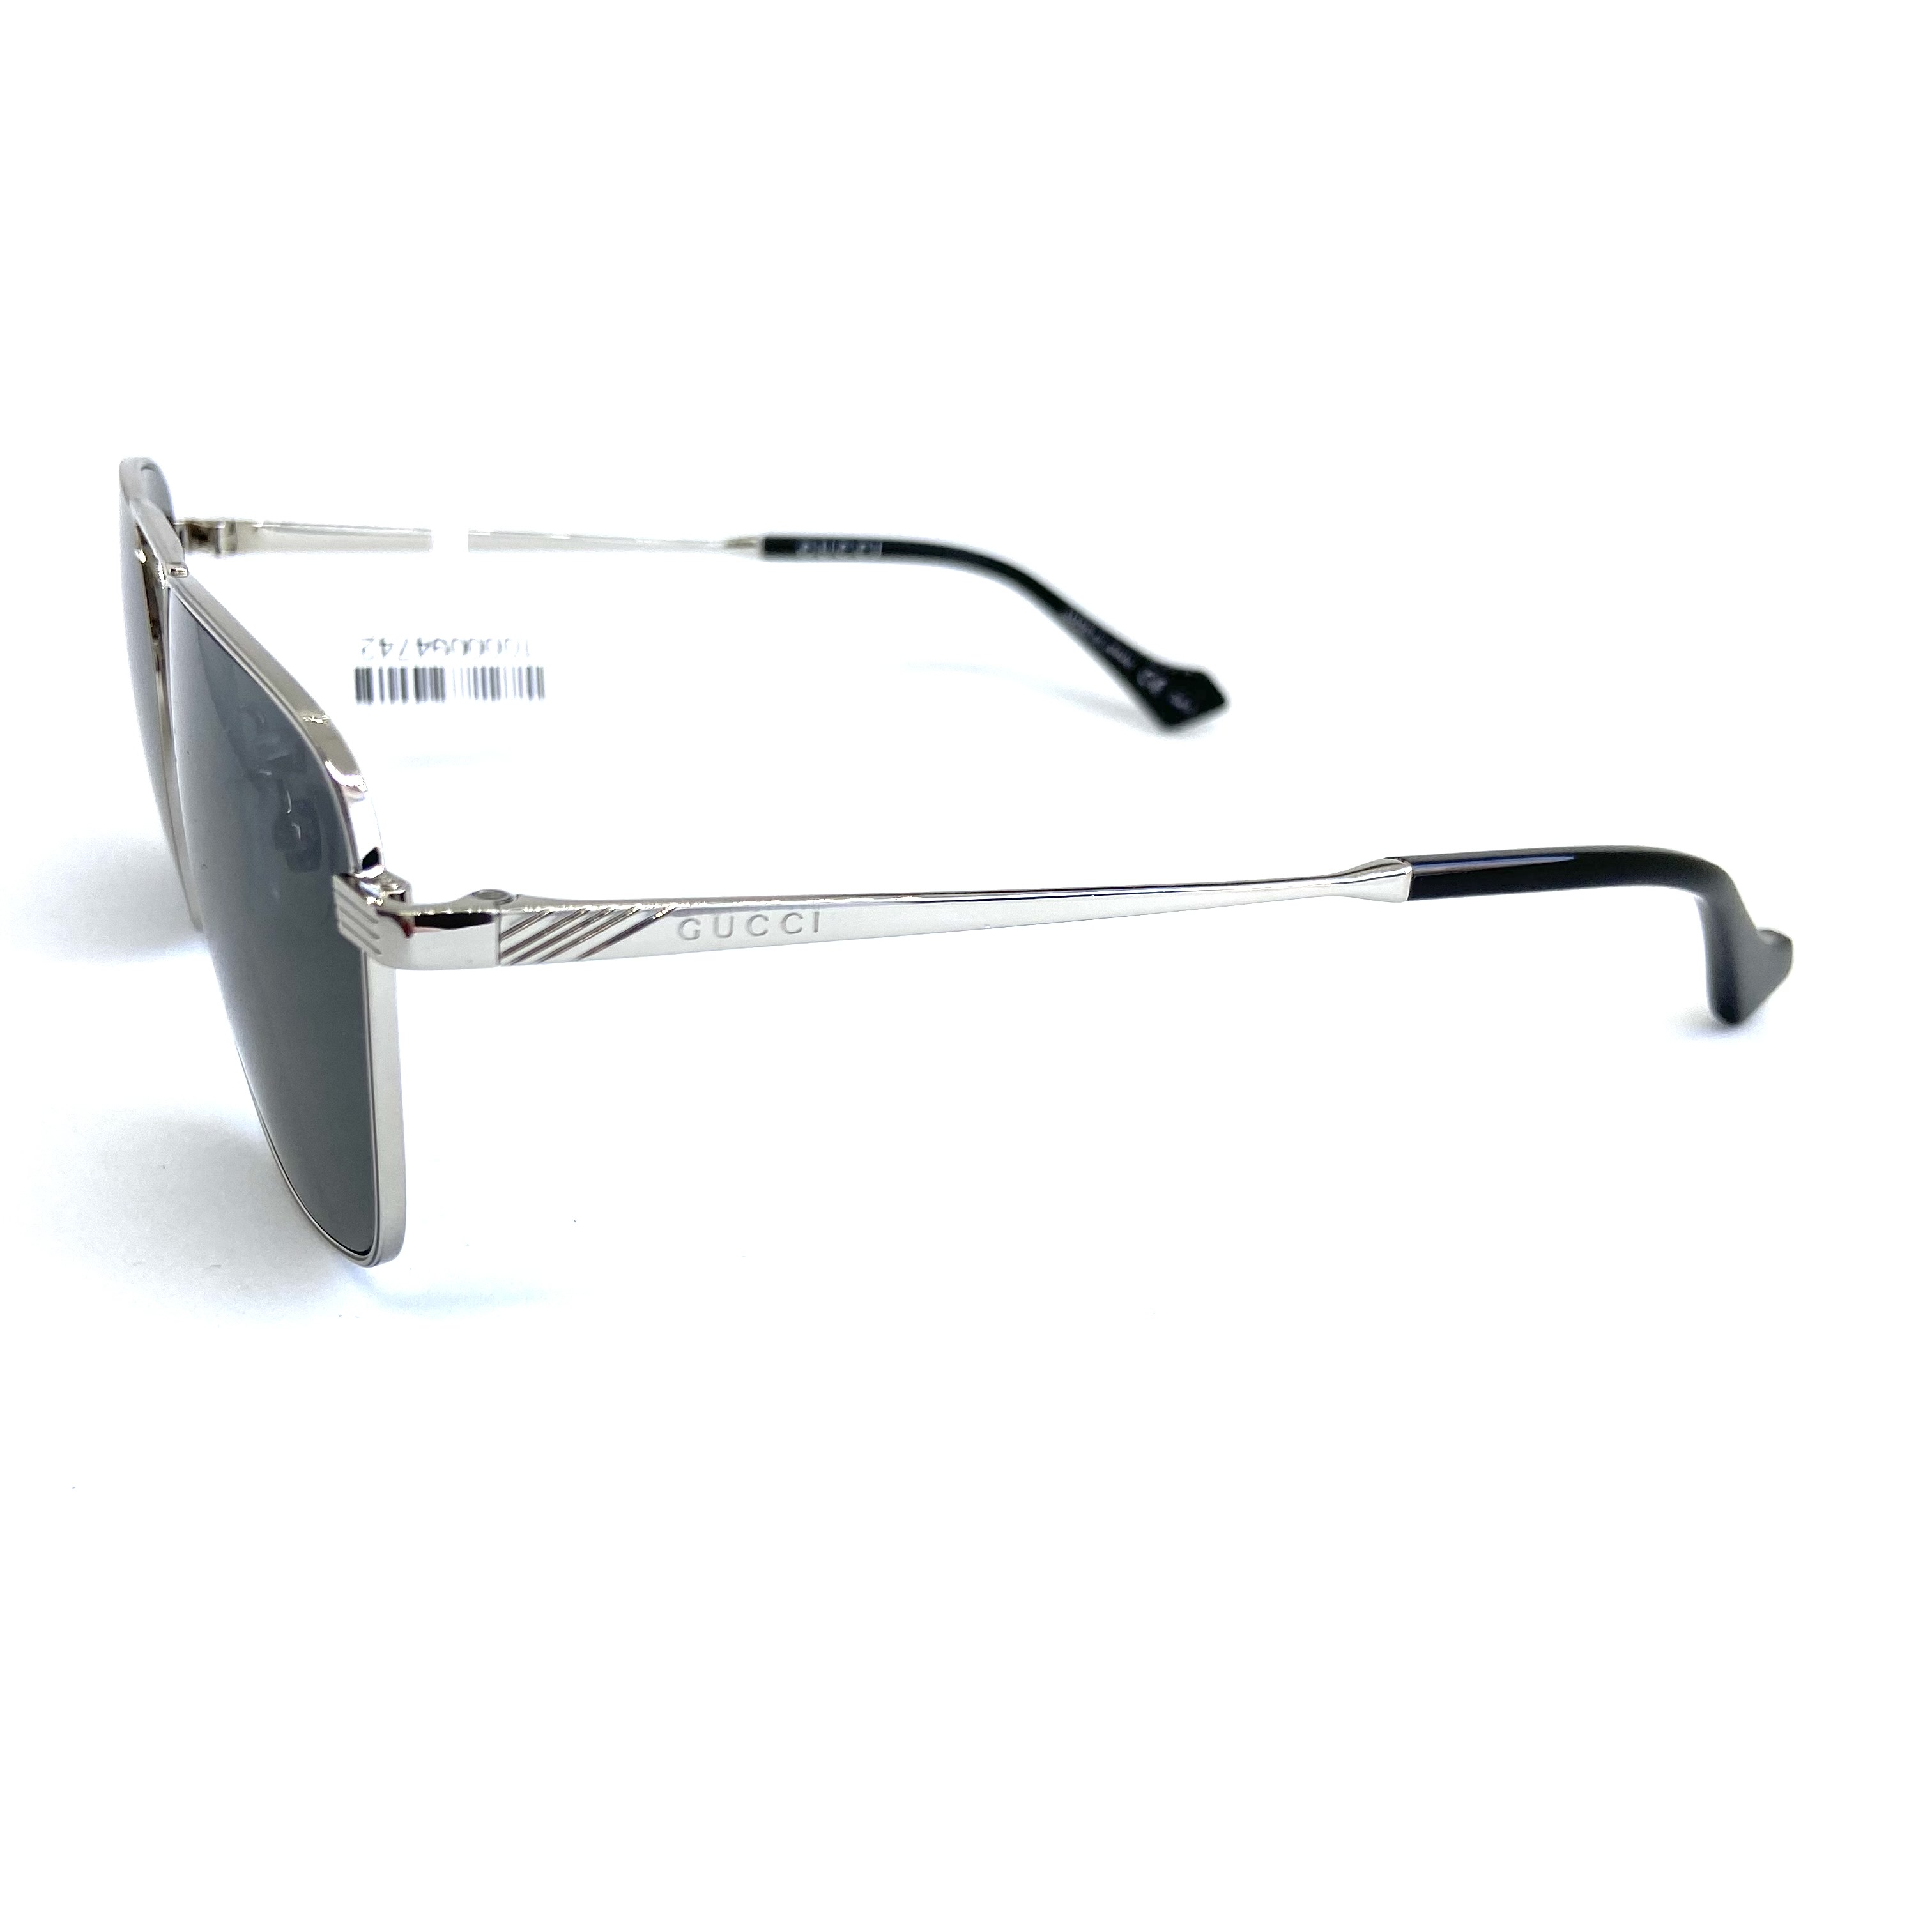 Солнцезащитные очки Gucci модель 0743